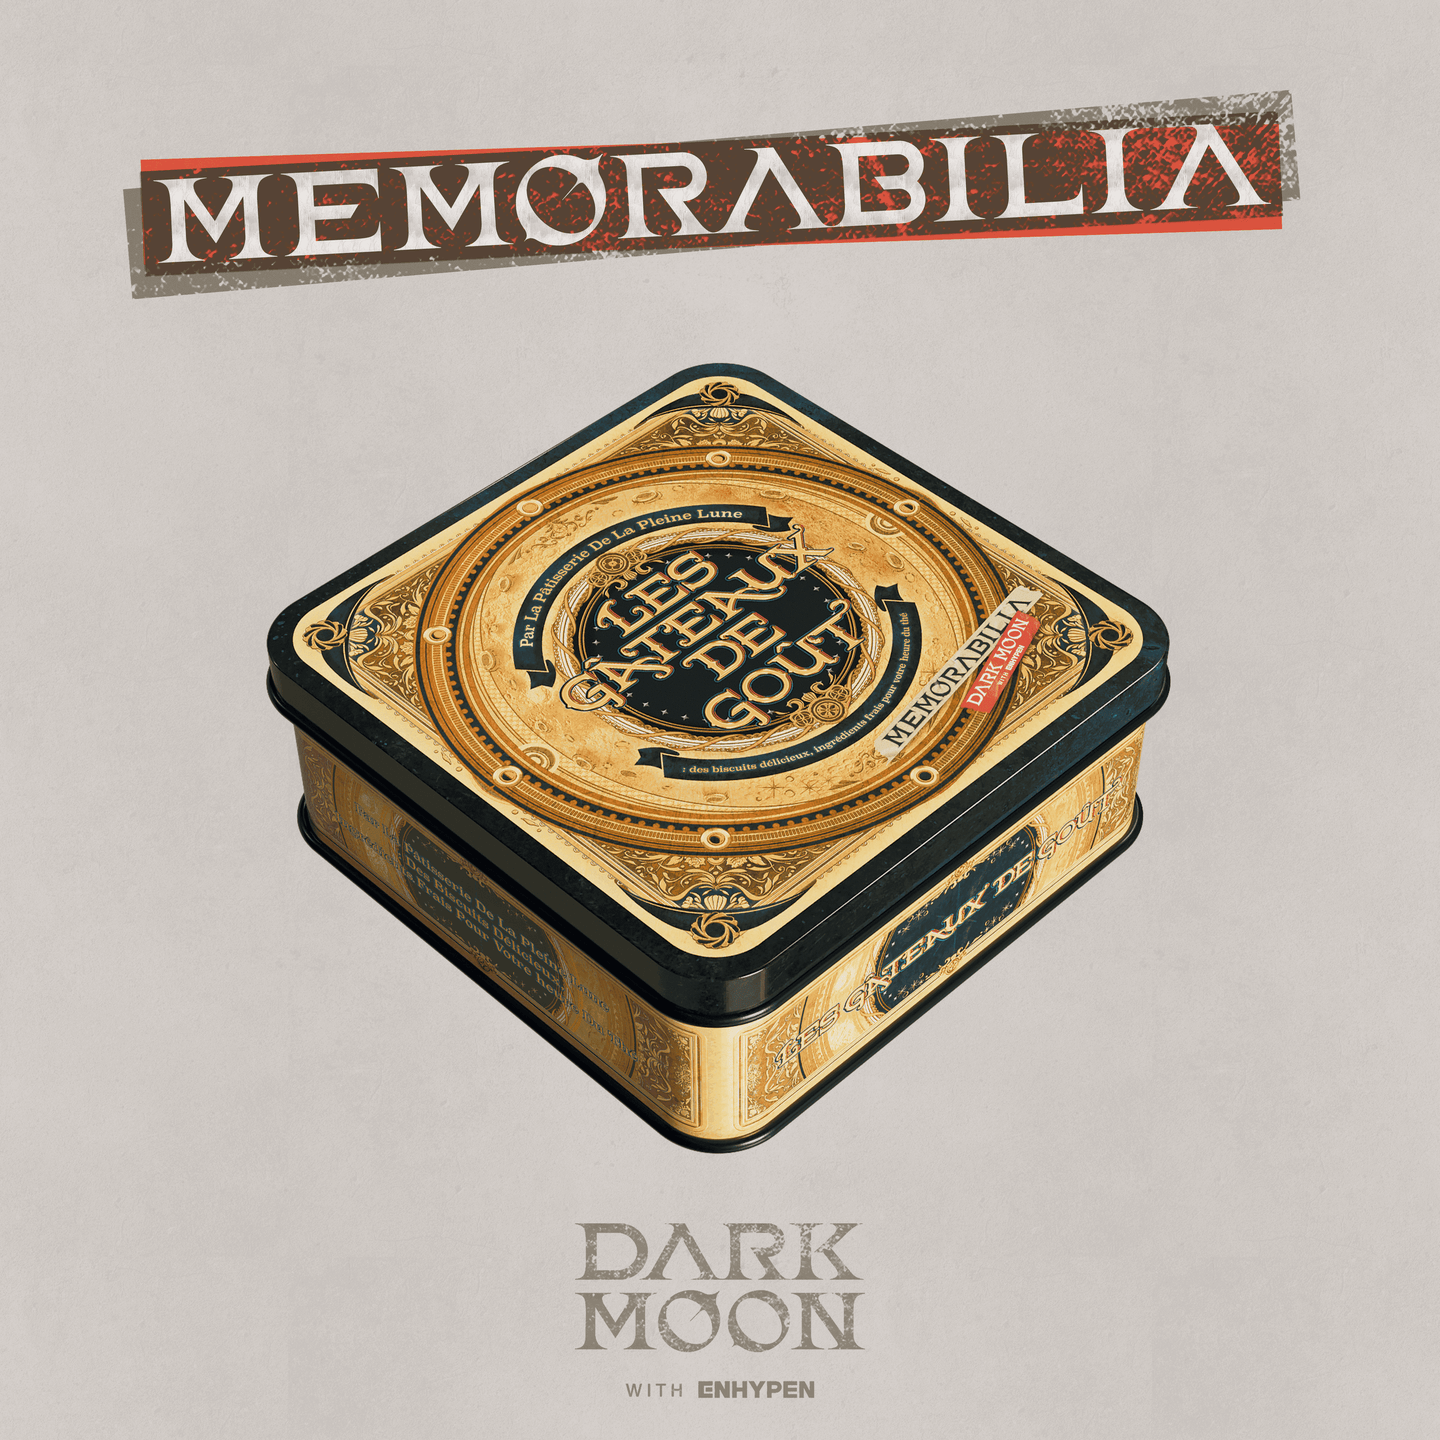 ENHYPEN – DARK MOON SPECIAL ALBUM [MEMORABILIA] (Moon Ver.)